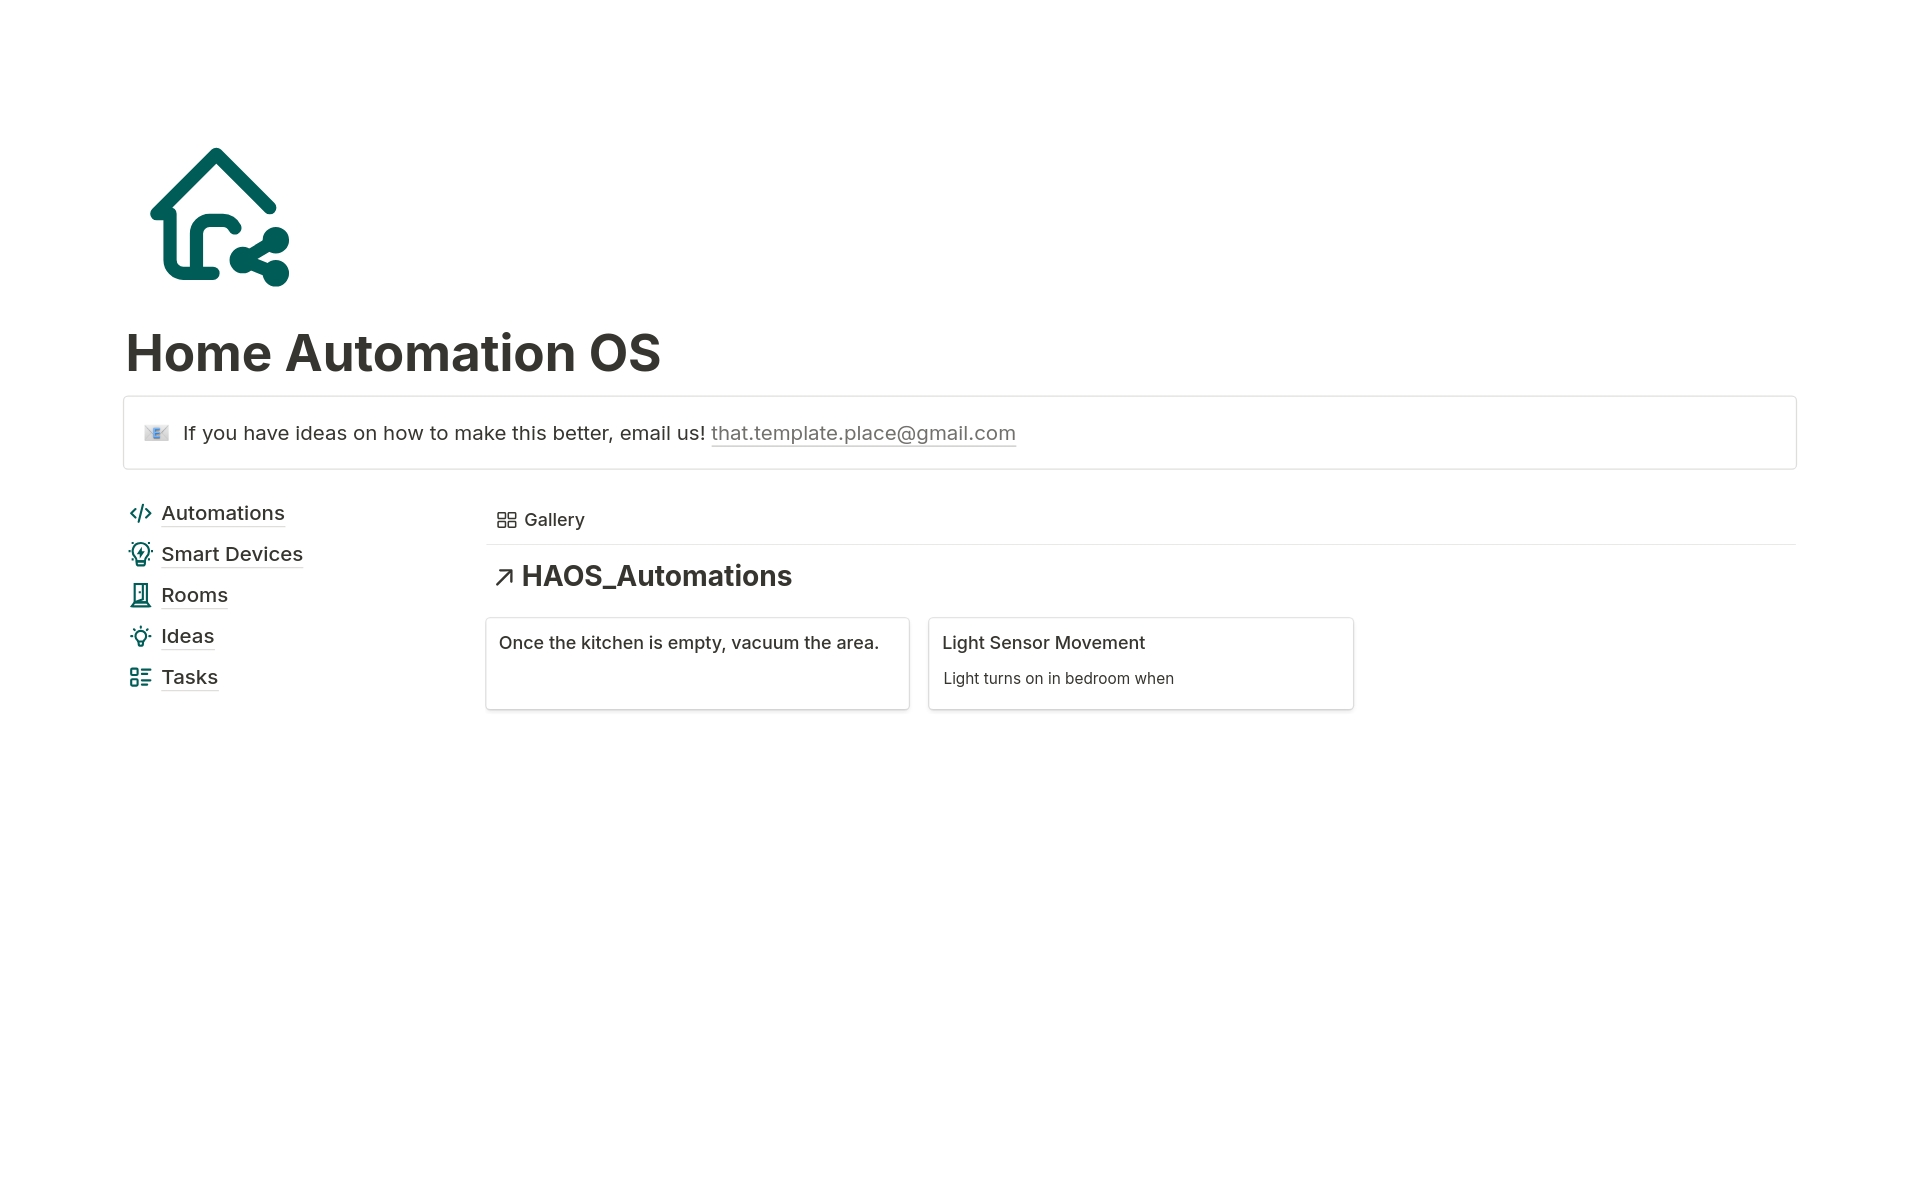 Vista previa de plantilla para Home Automation OS